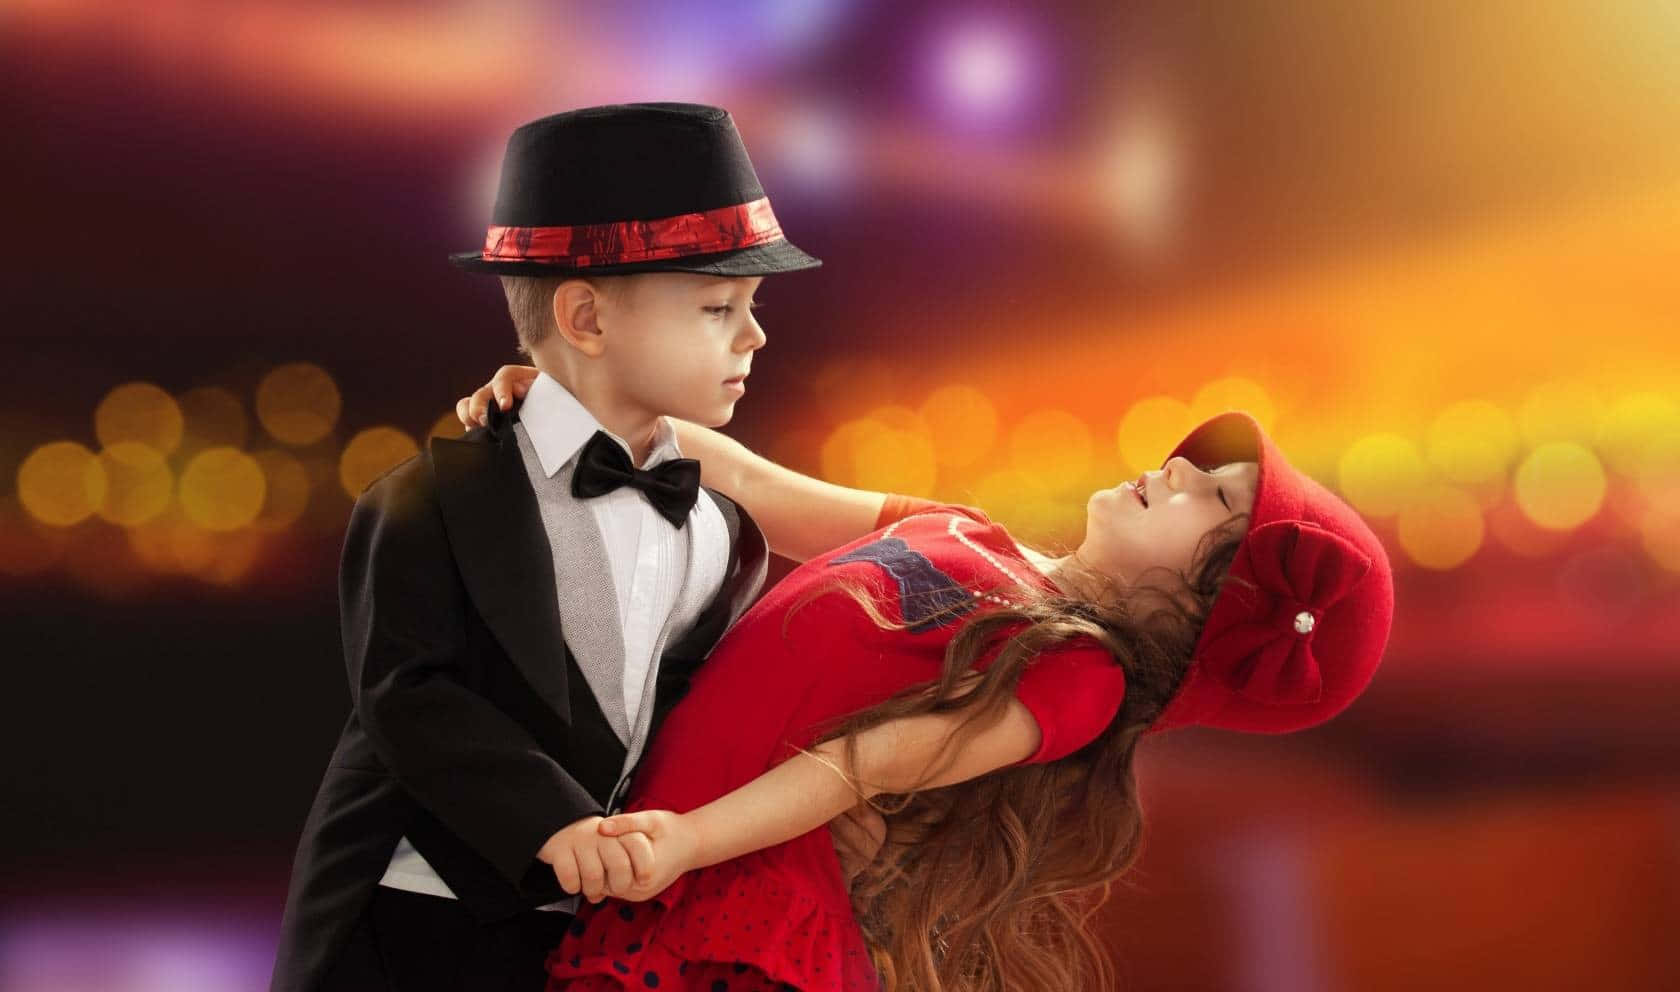 Einpaar Kinder Tanzen In Einem Roten Kleid.